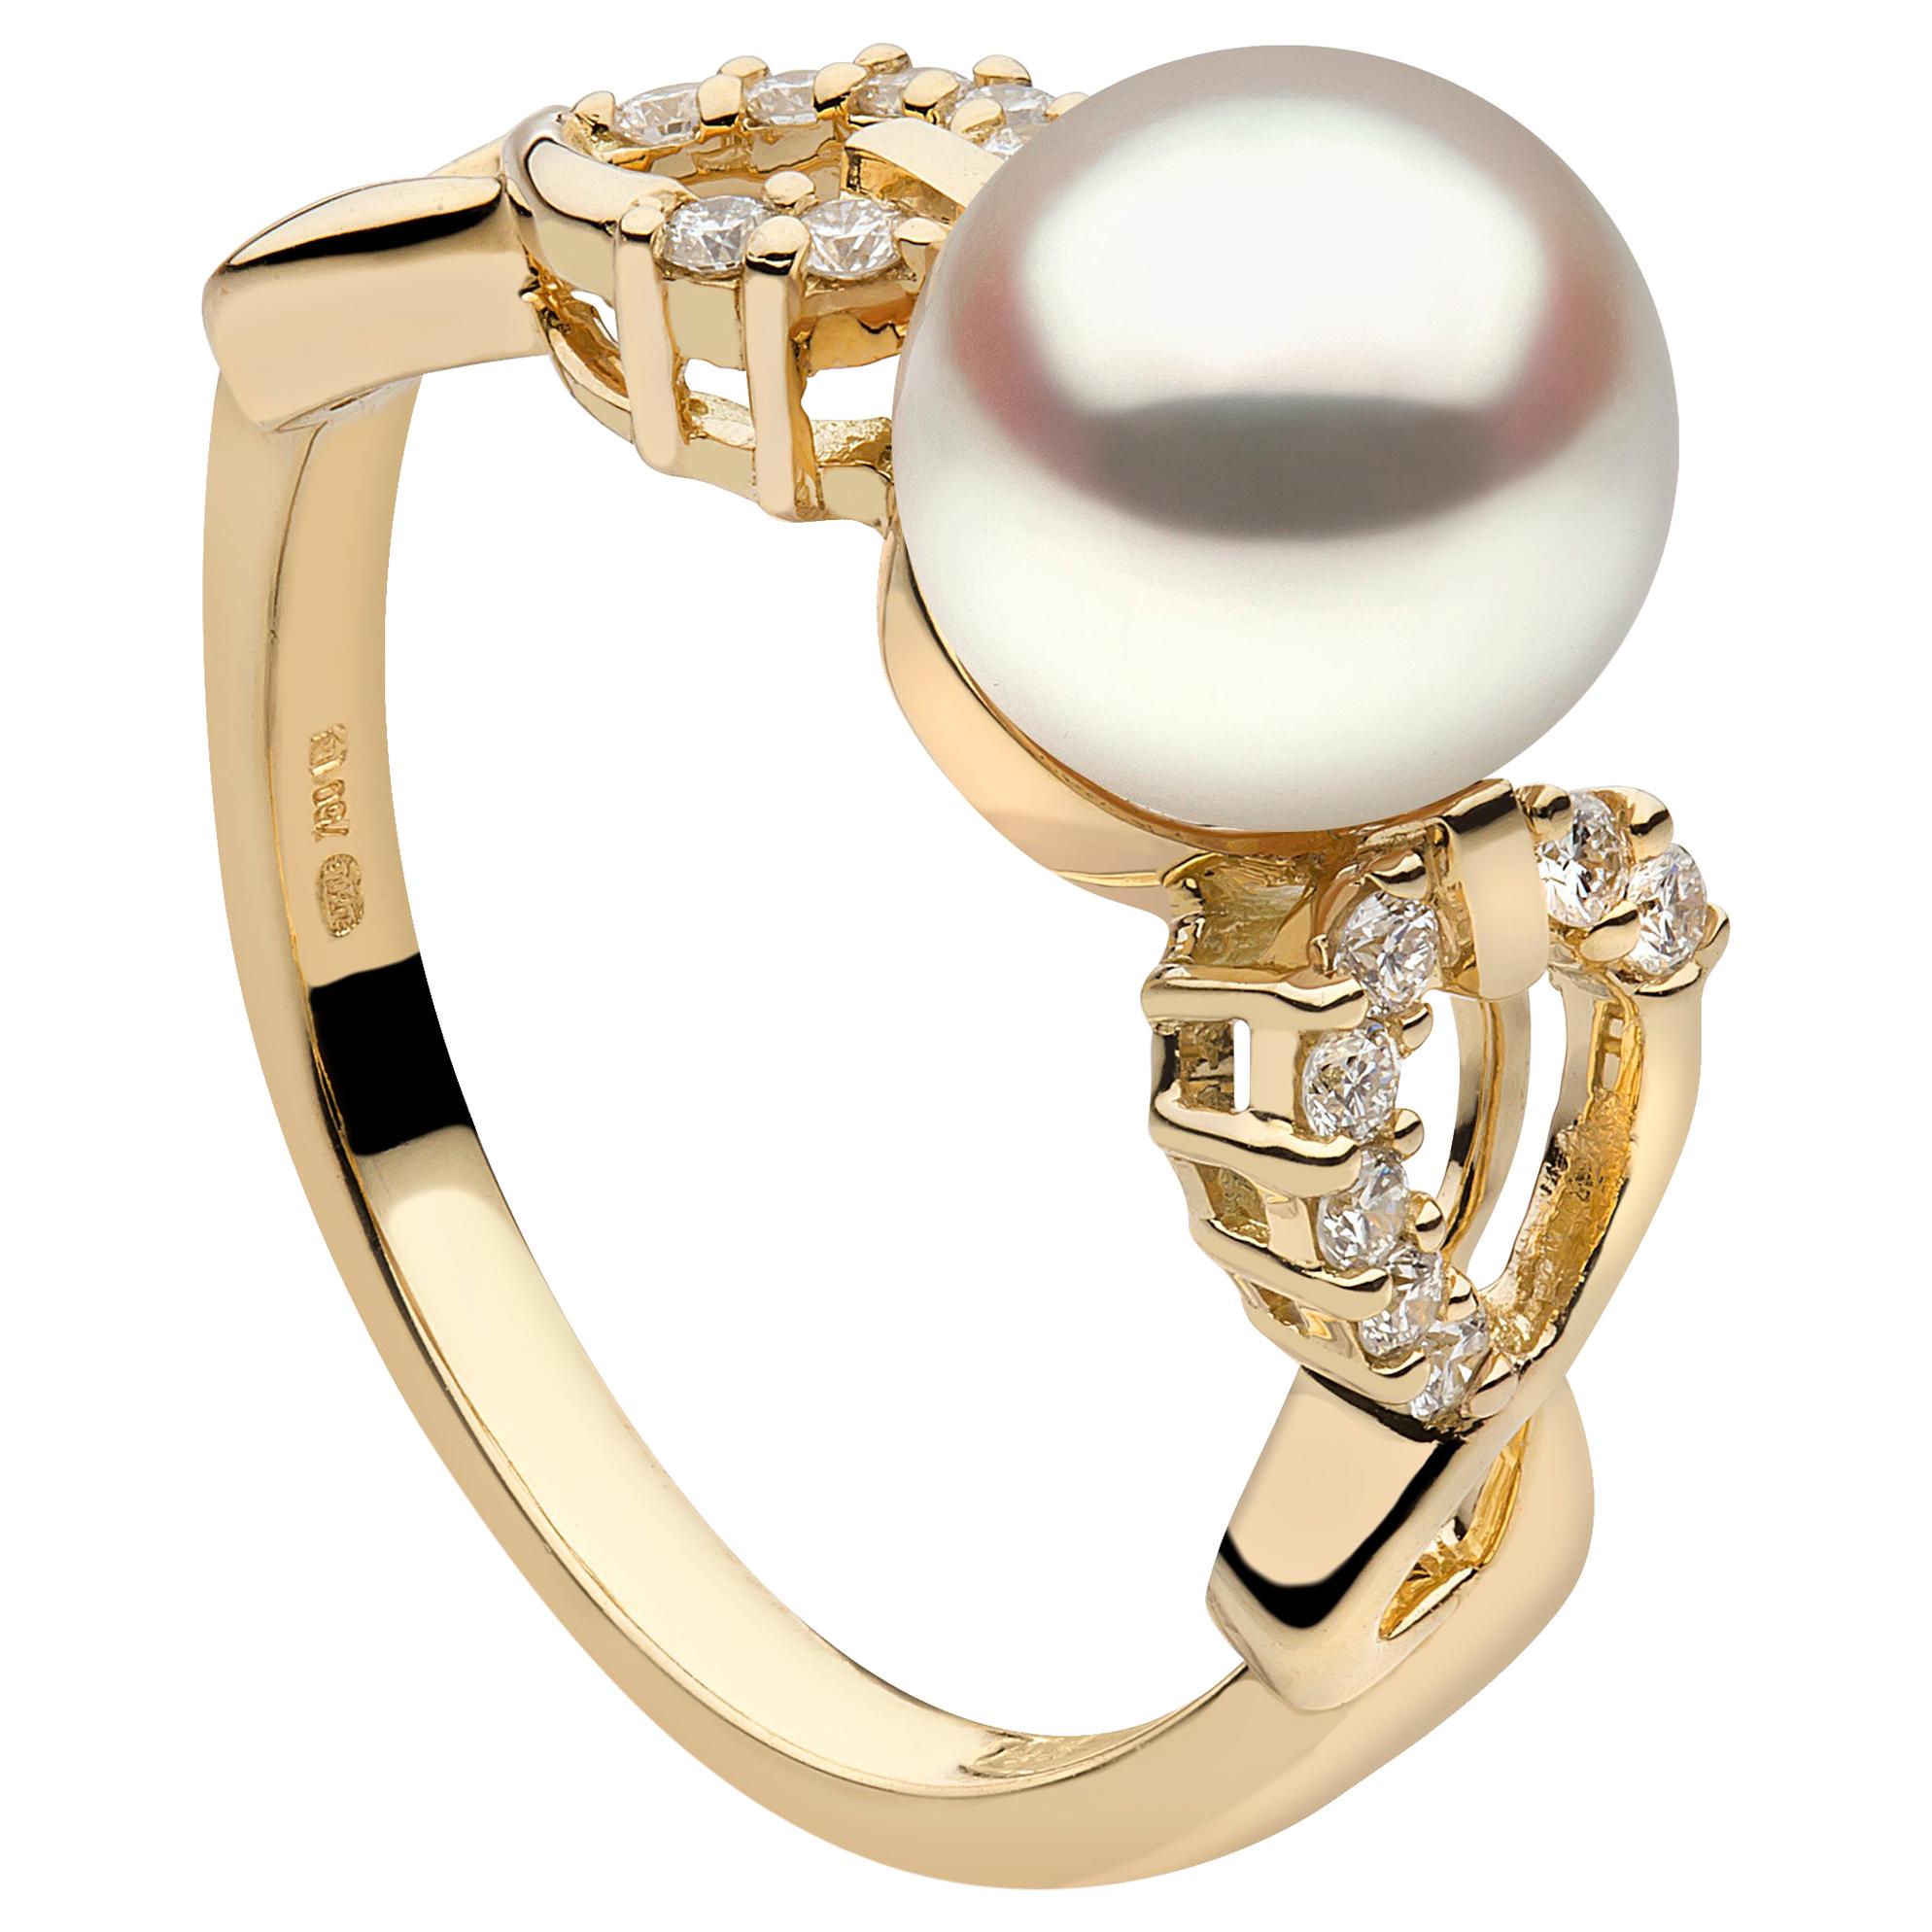 Yoko London South Sea Pearl and Diamond Ring in 18k Yellow Gold